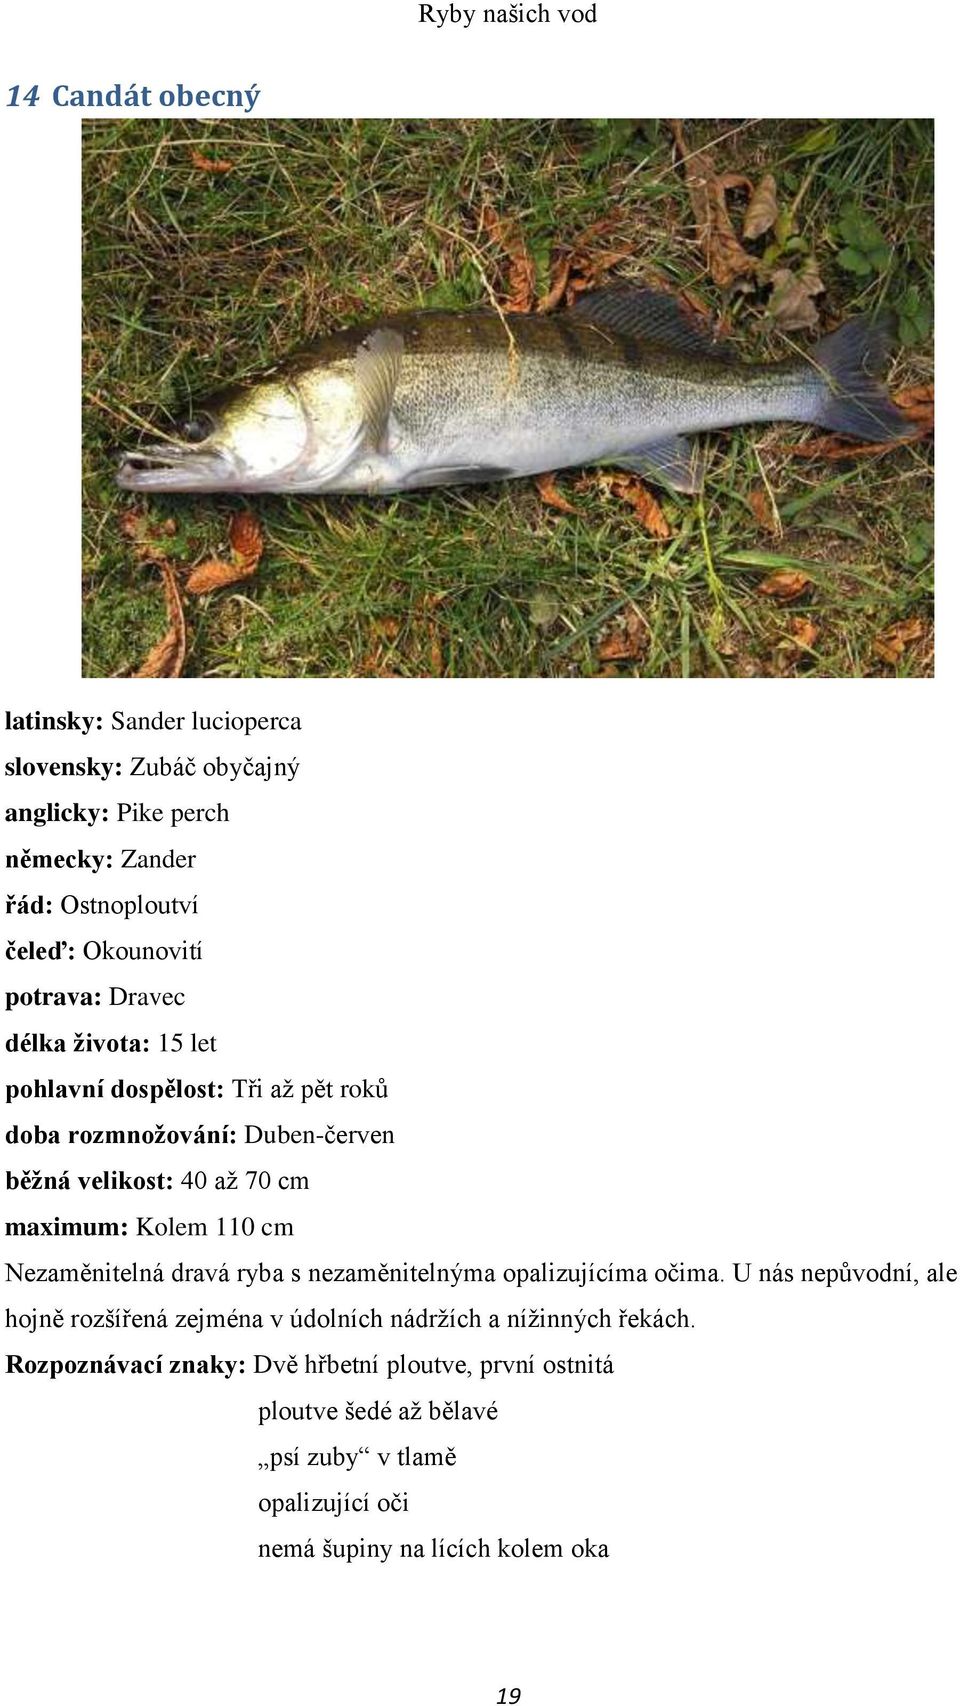 110 cm Nezaměnitelná dravá ryba s nezaměnitelnýma opalizujícíma očima.